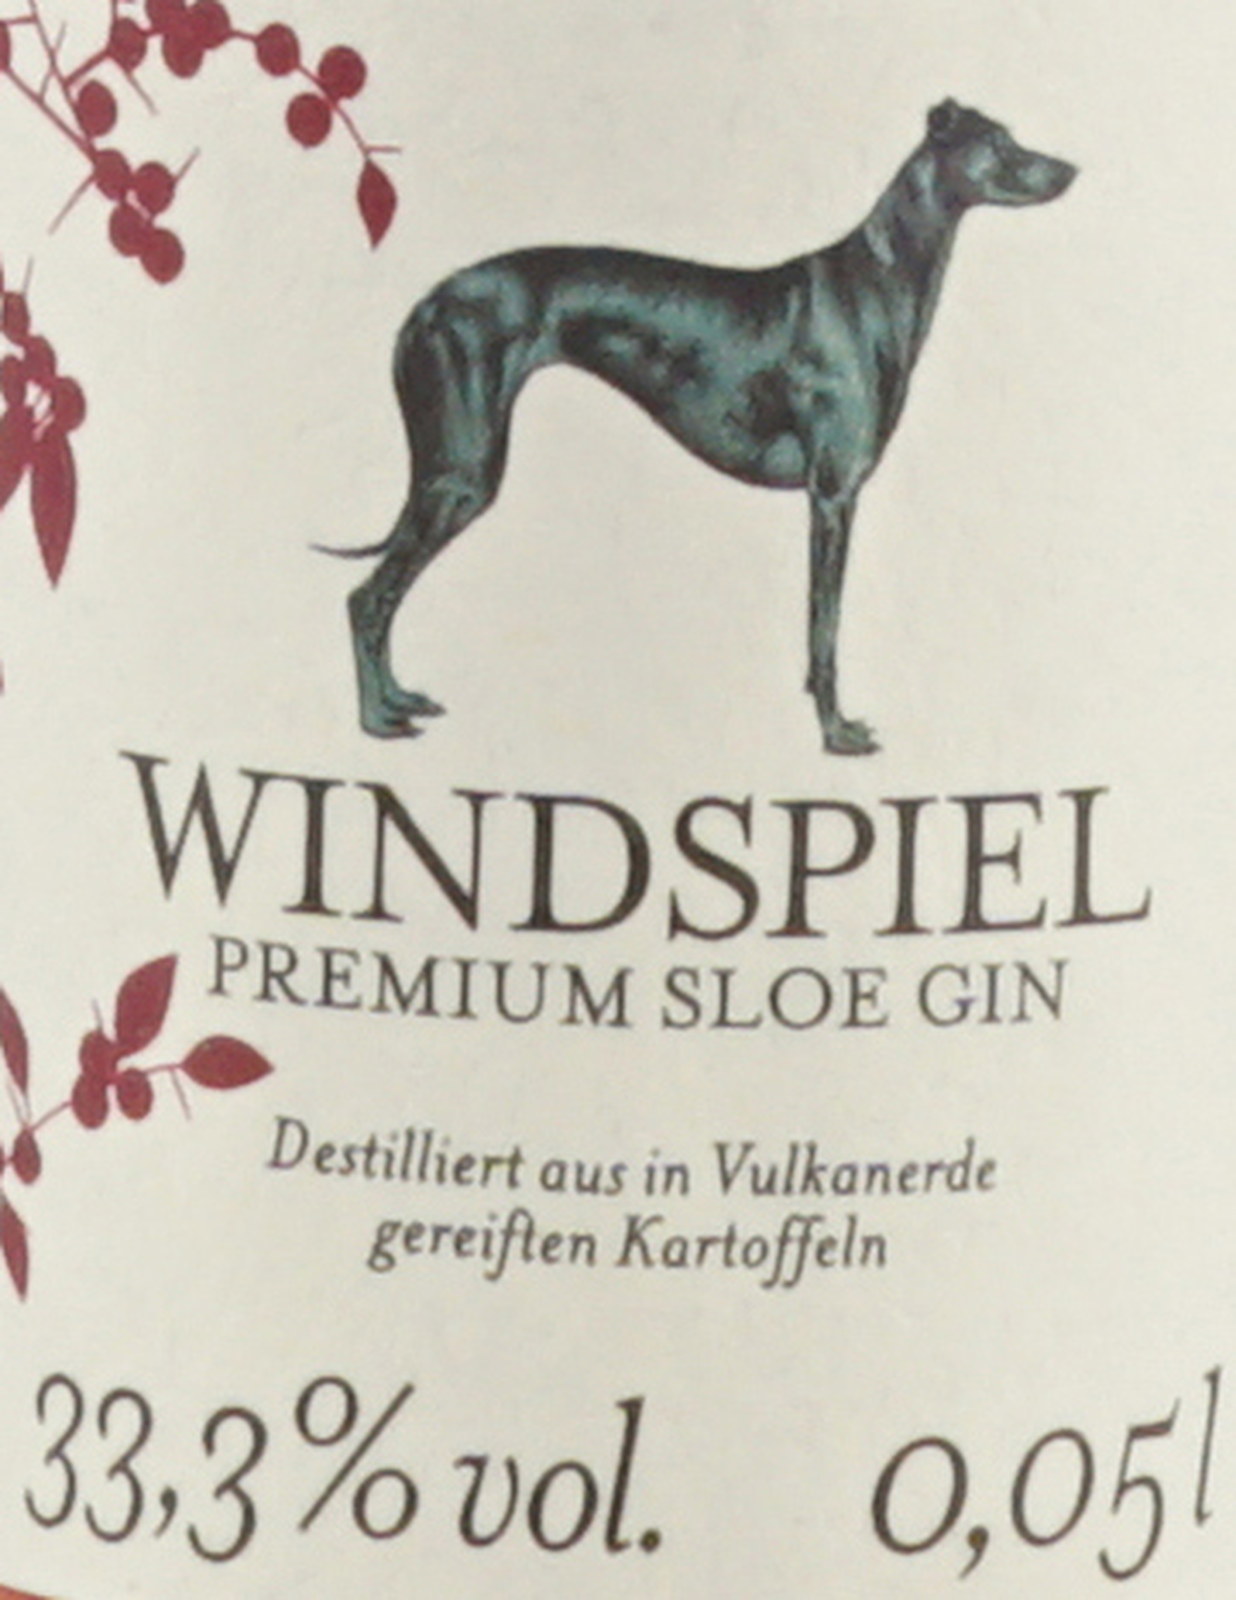 Premium % 0,05 Gin Windspiel 33,3 Sloe Liter